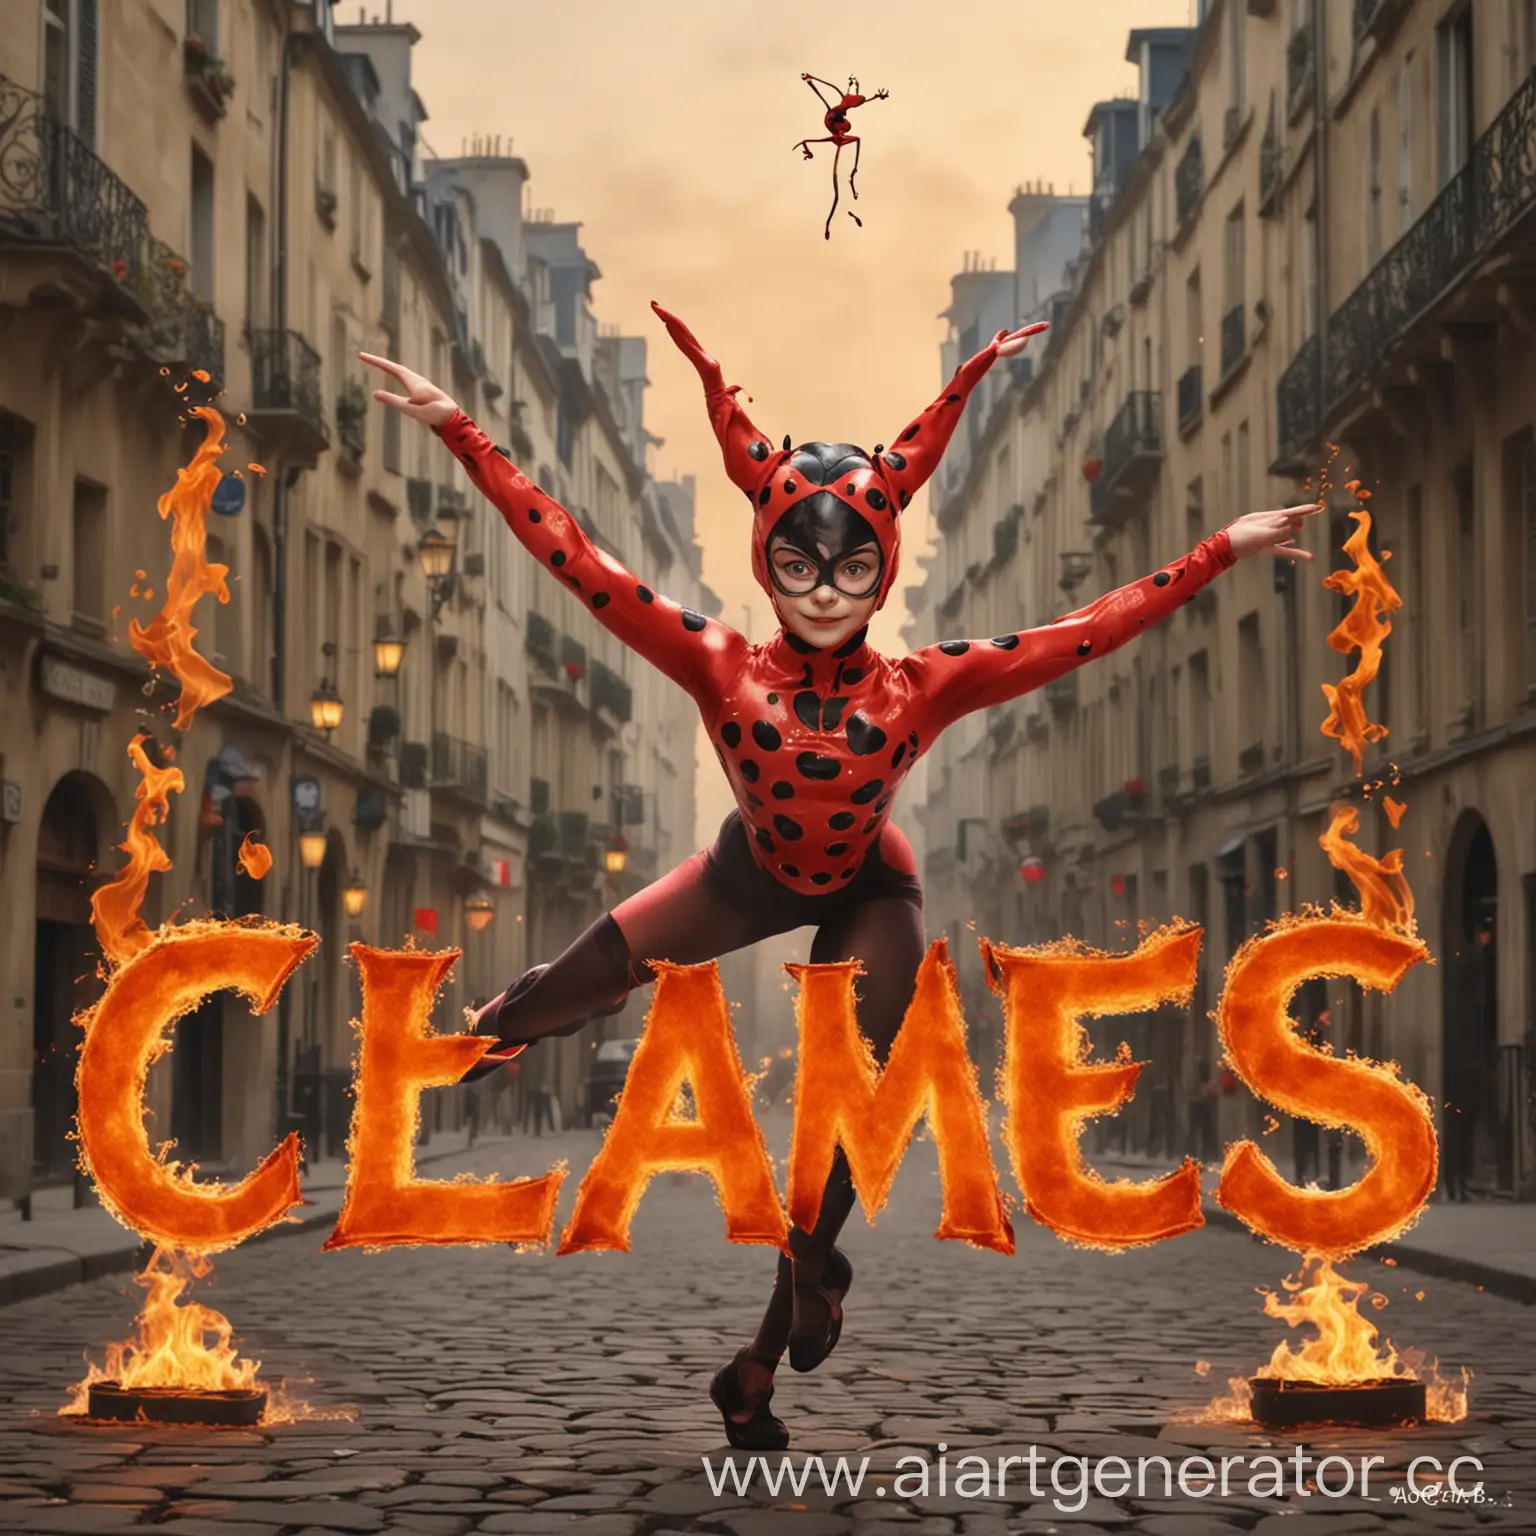 сгенирируй картинку с названием логотипа THE FLAMES OF PARIS  c изображением леди баг и супер кота  и с использованием гимнастики акробатики